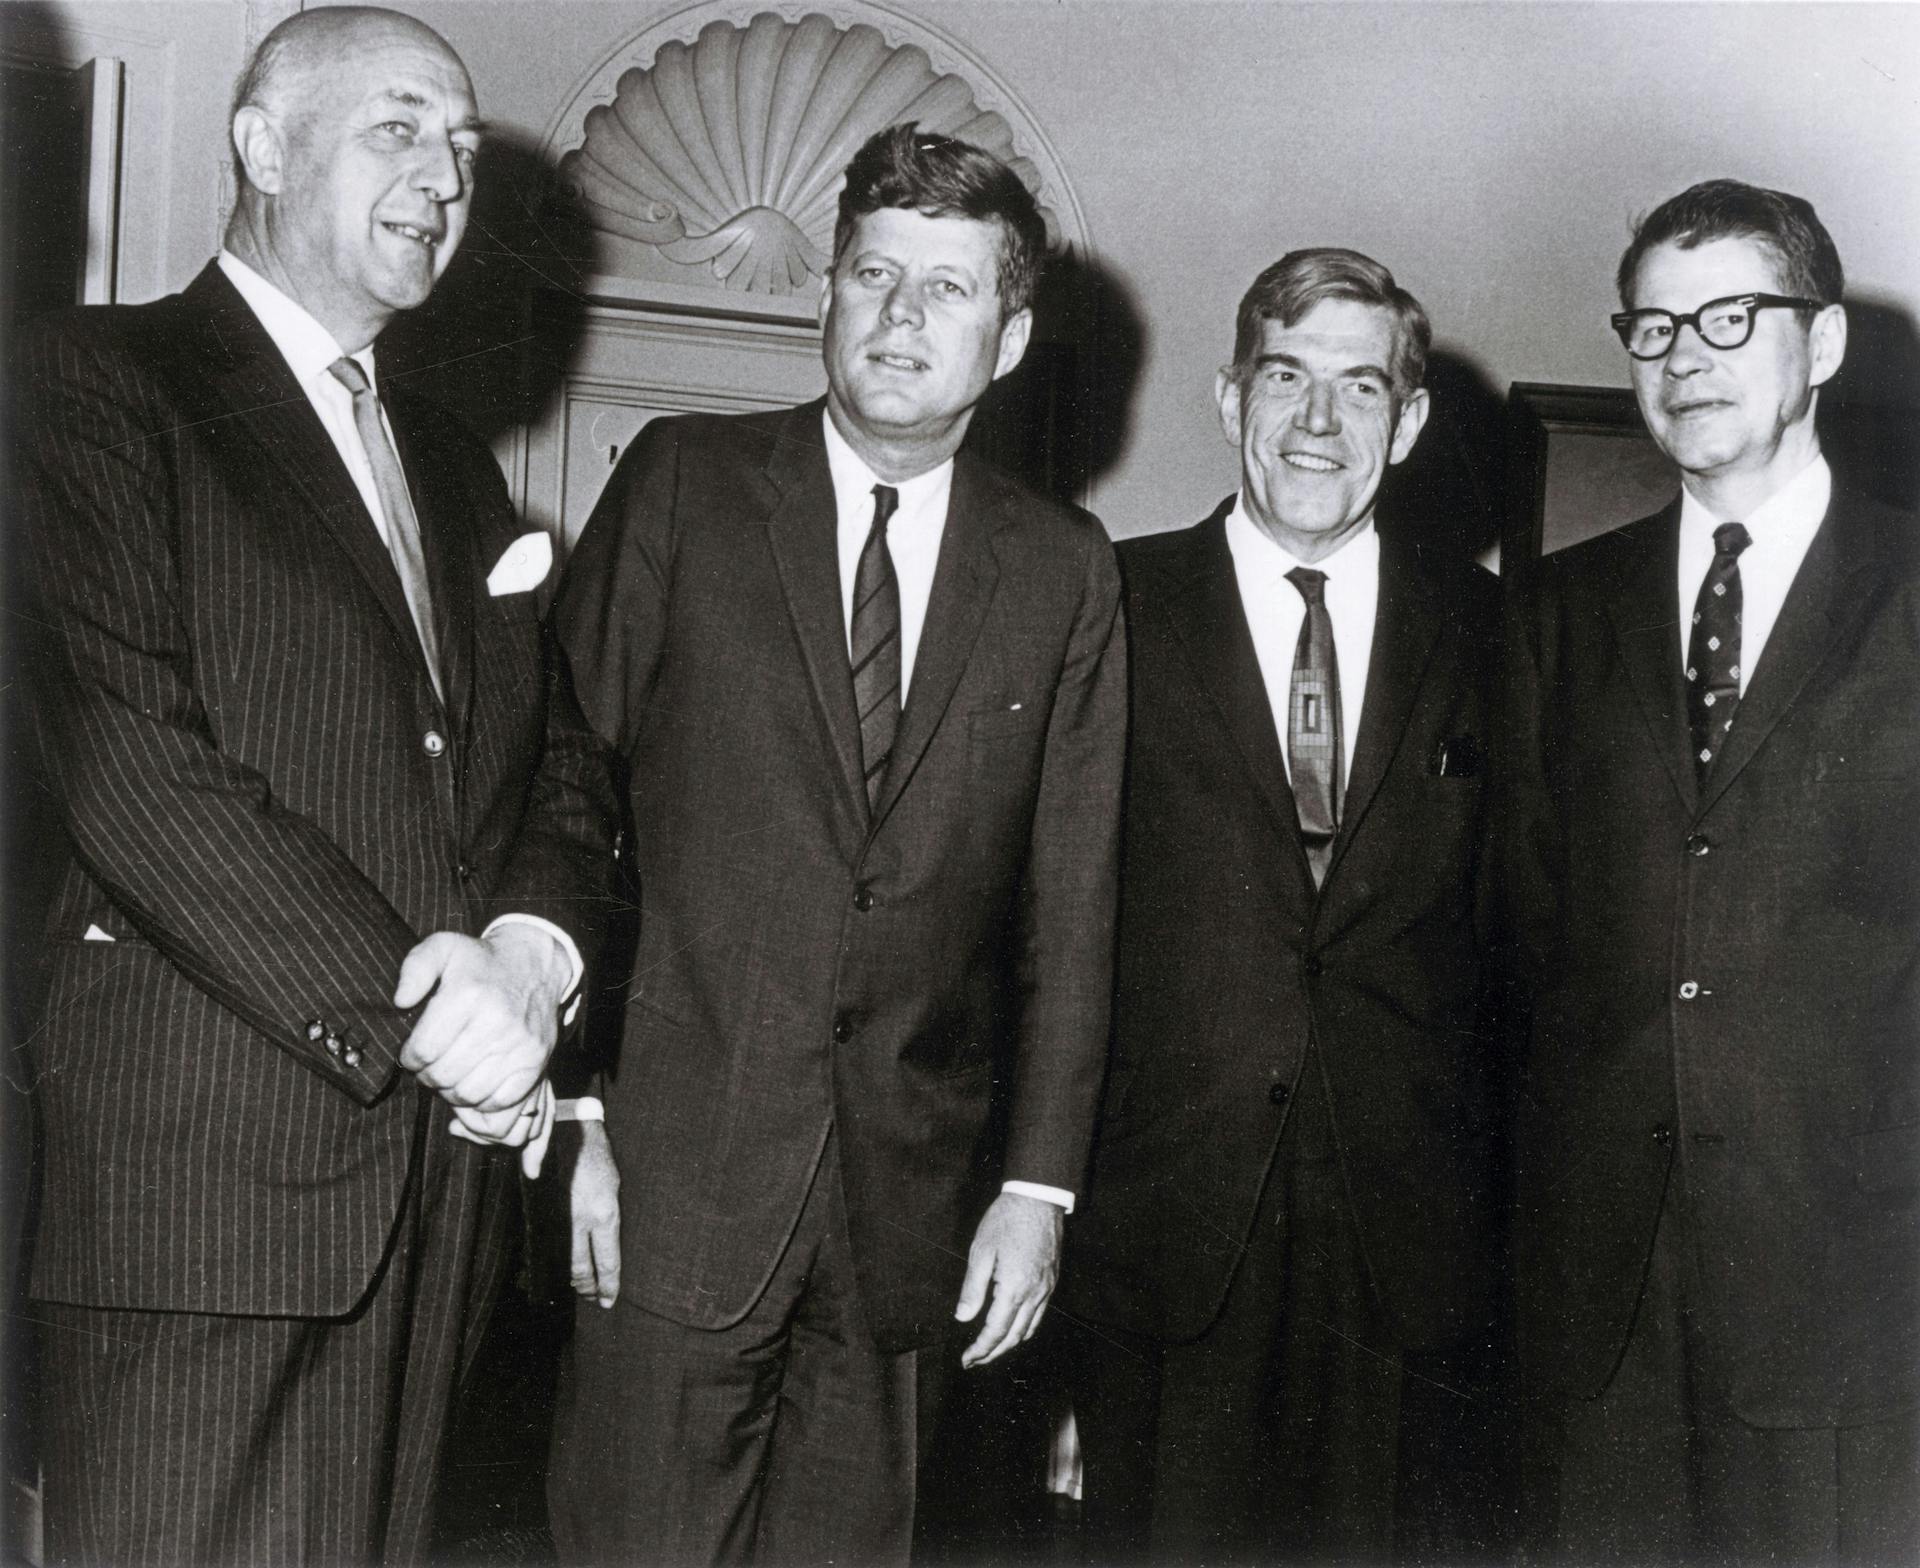  Eurocommisaris Mansholt op bezoek bij John F. Kennedy, 1963. Credits: Archief Sicco Mansholt / Internationaal Instituut voor Sociale Geschiedenis  